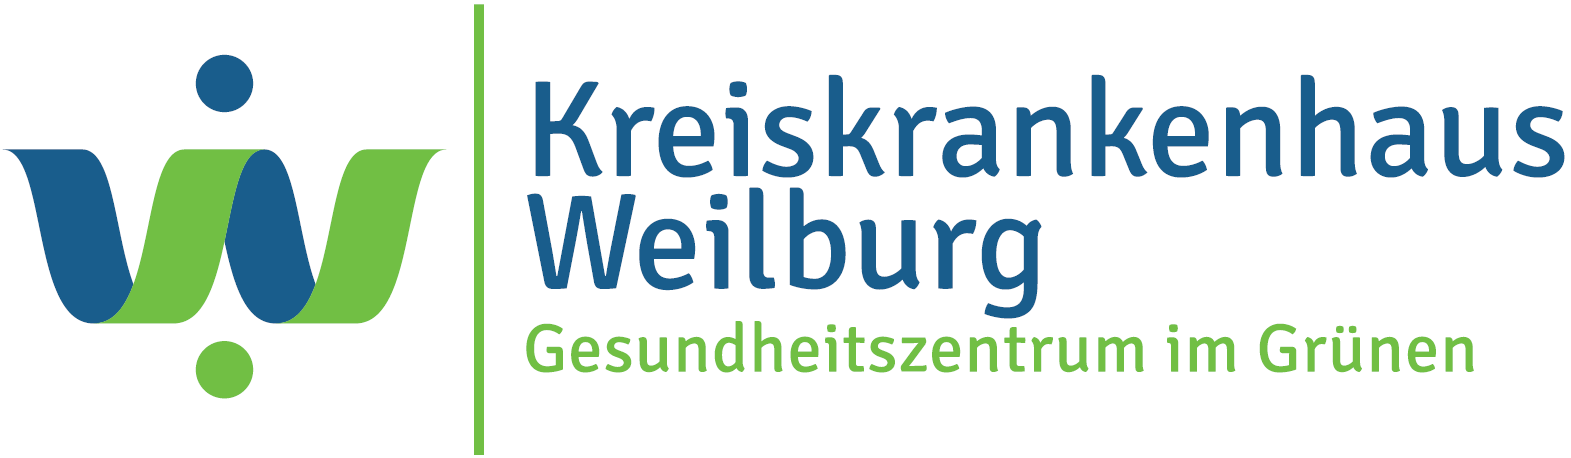 Kreiskrankenhaus Weilburg Gesundheitszentrum im Grünen